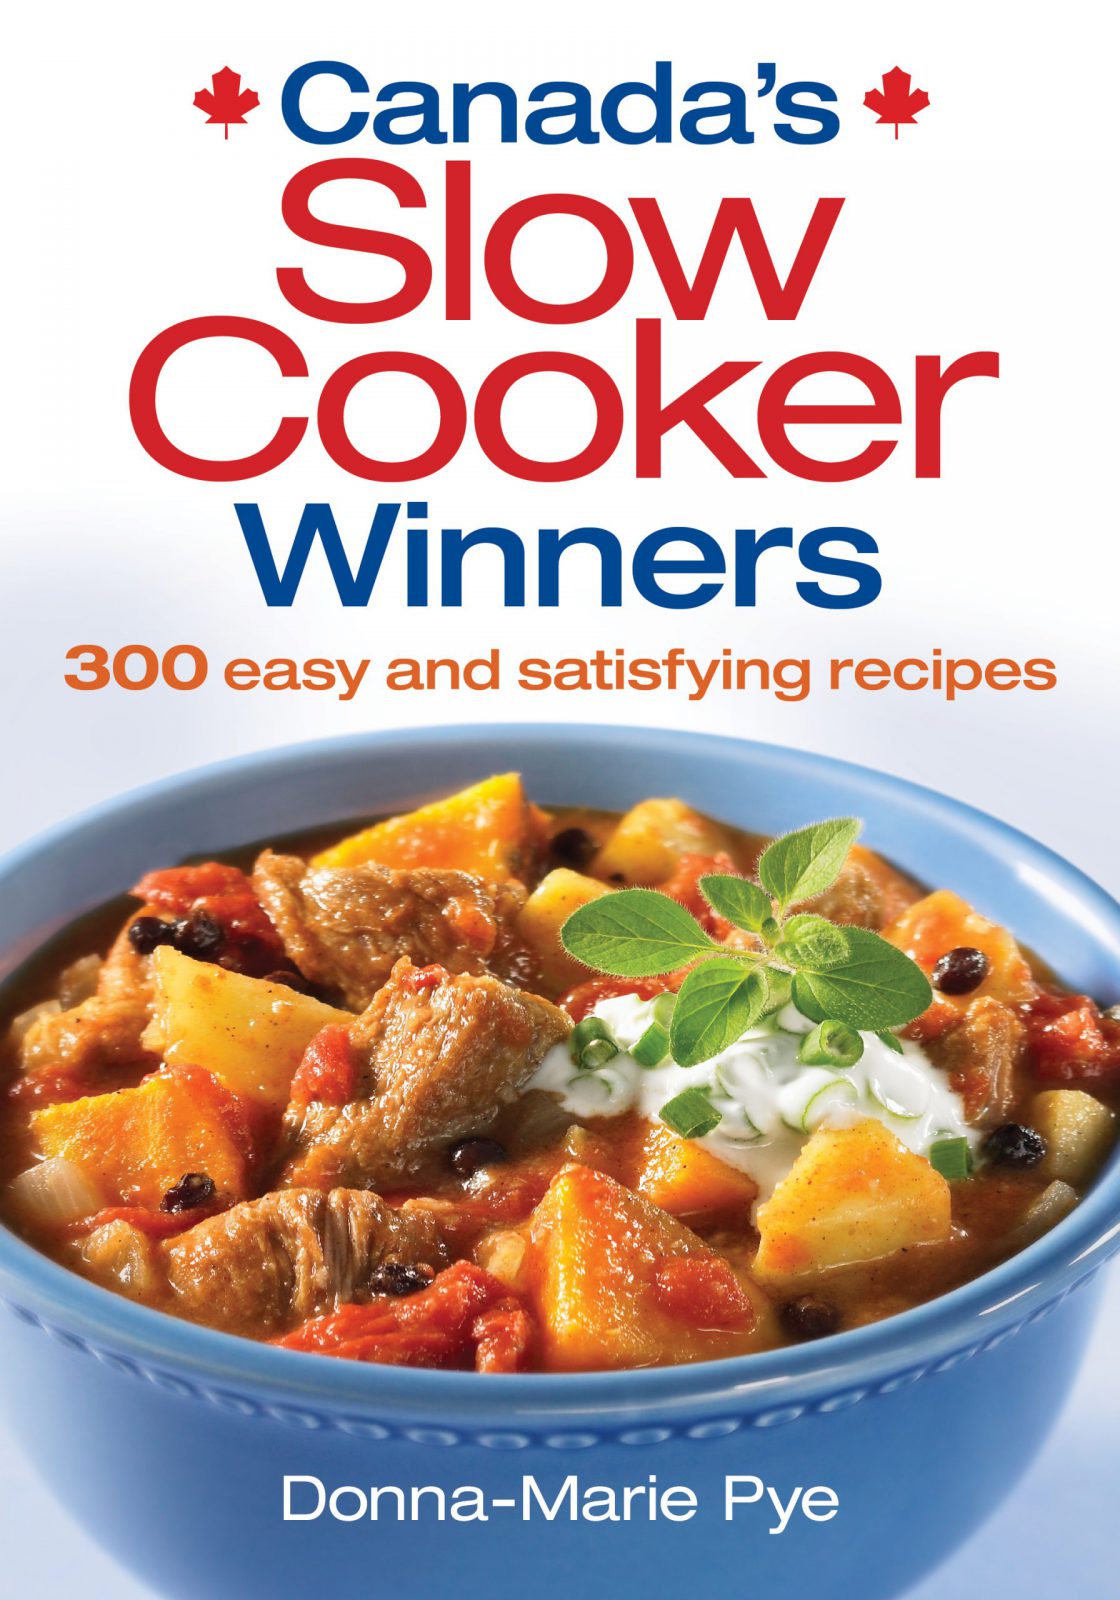 Slow Cooker Winners